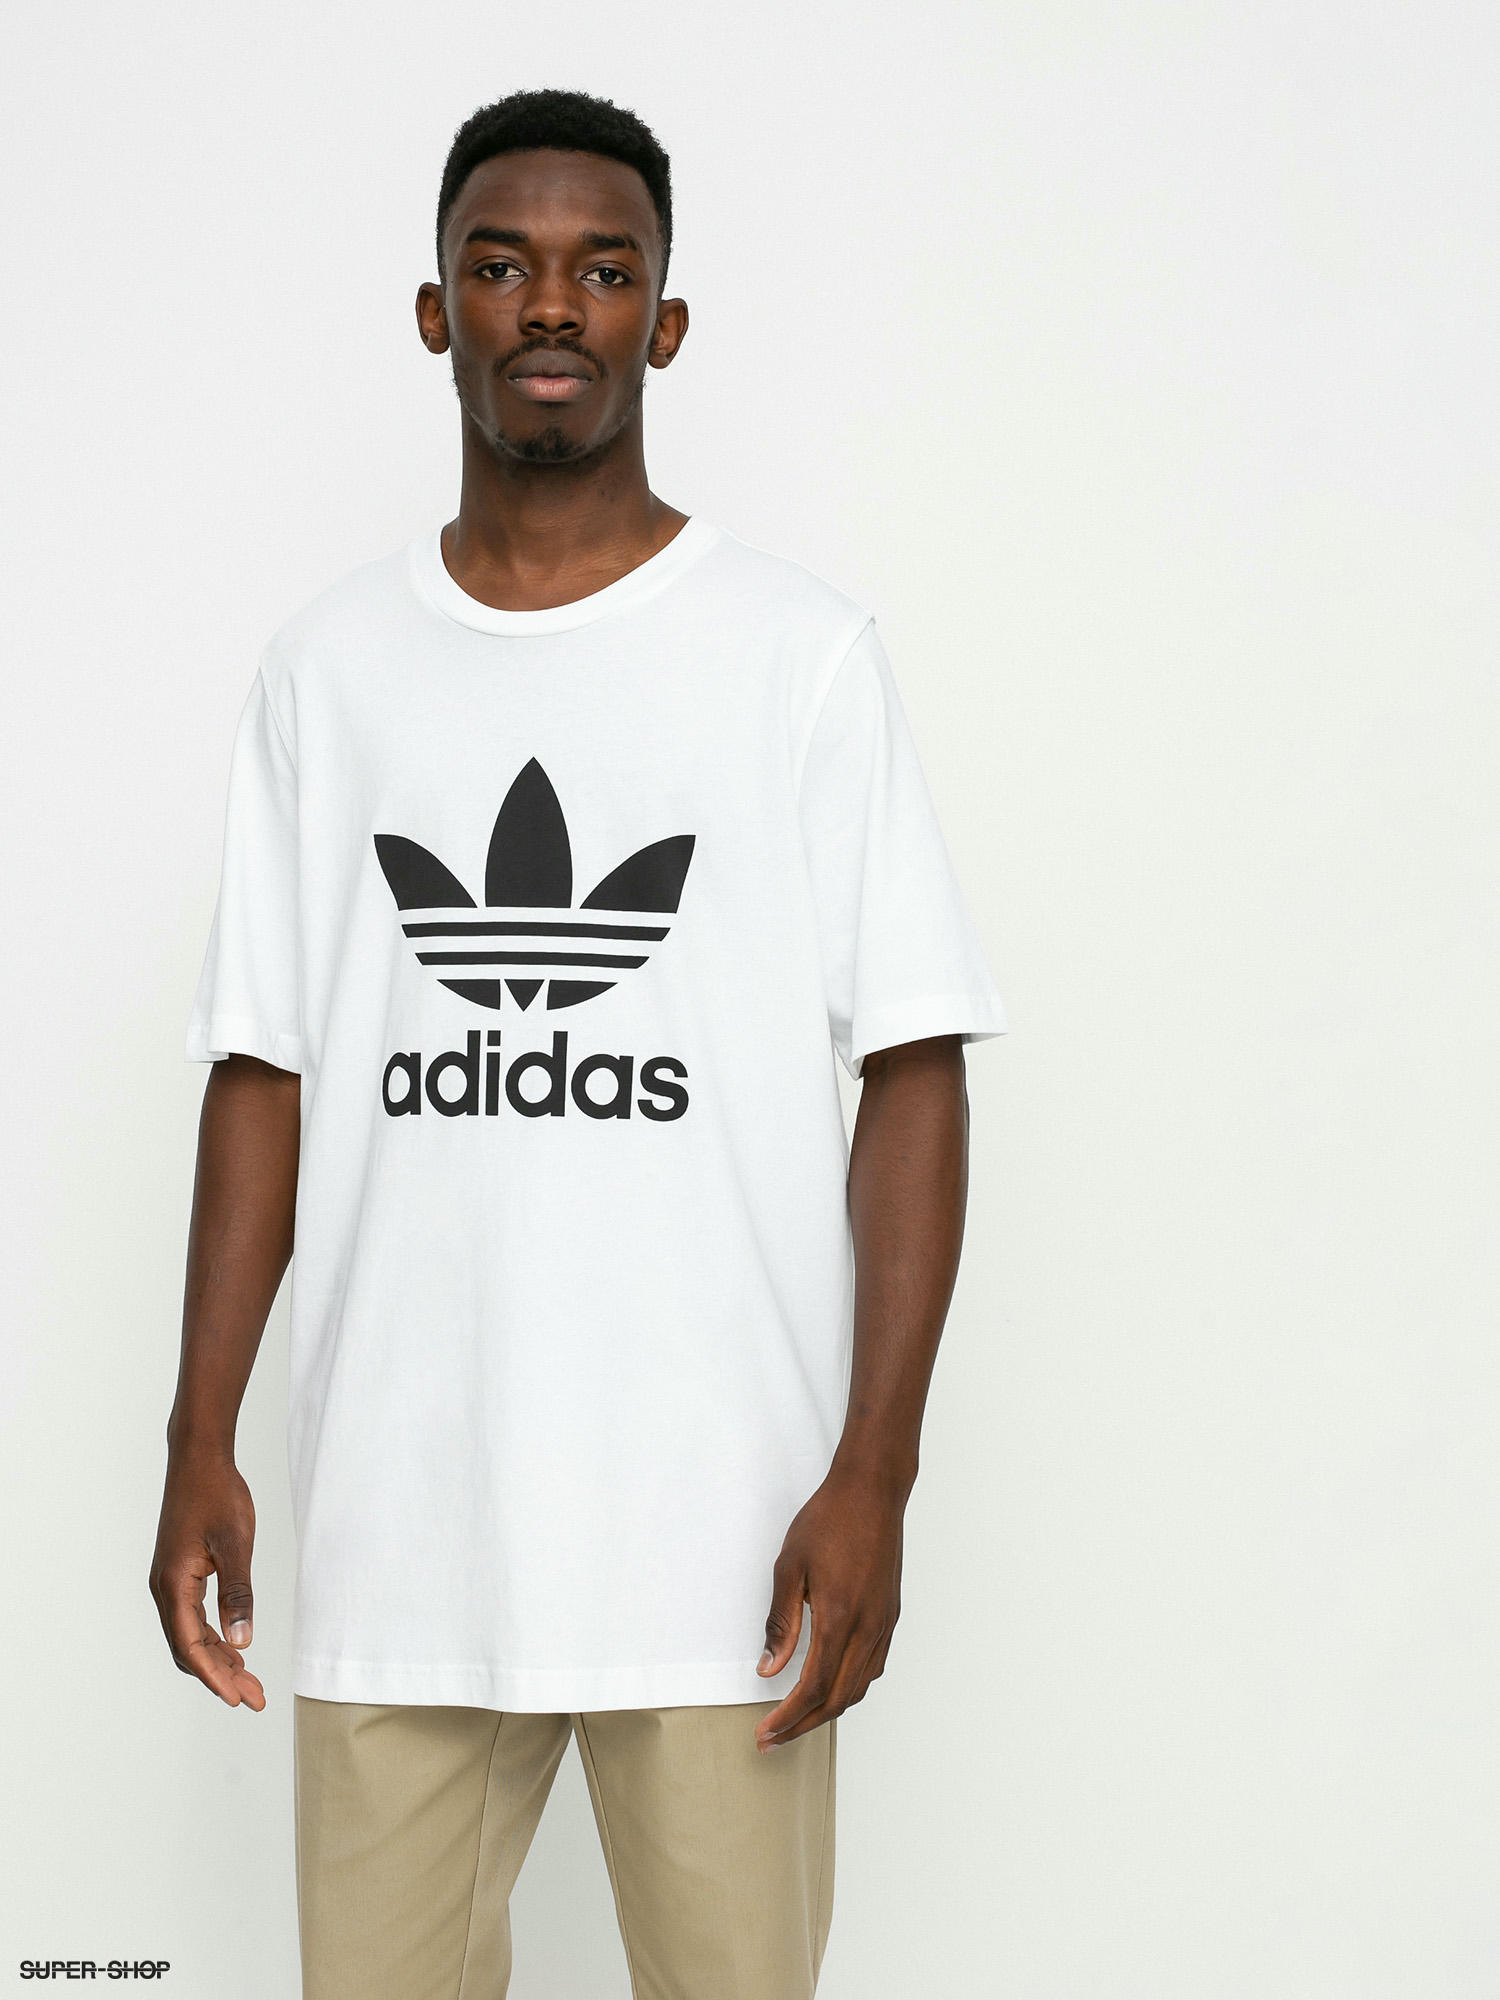 adidas Originals T-shirt (white/black)